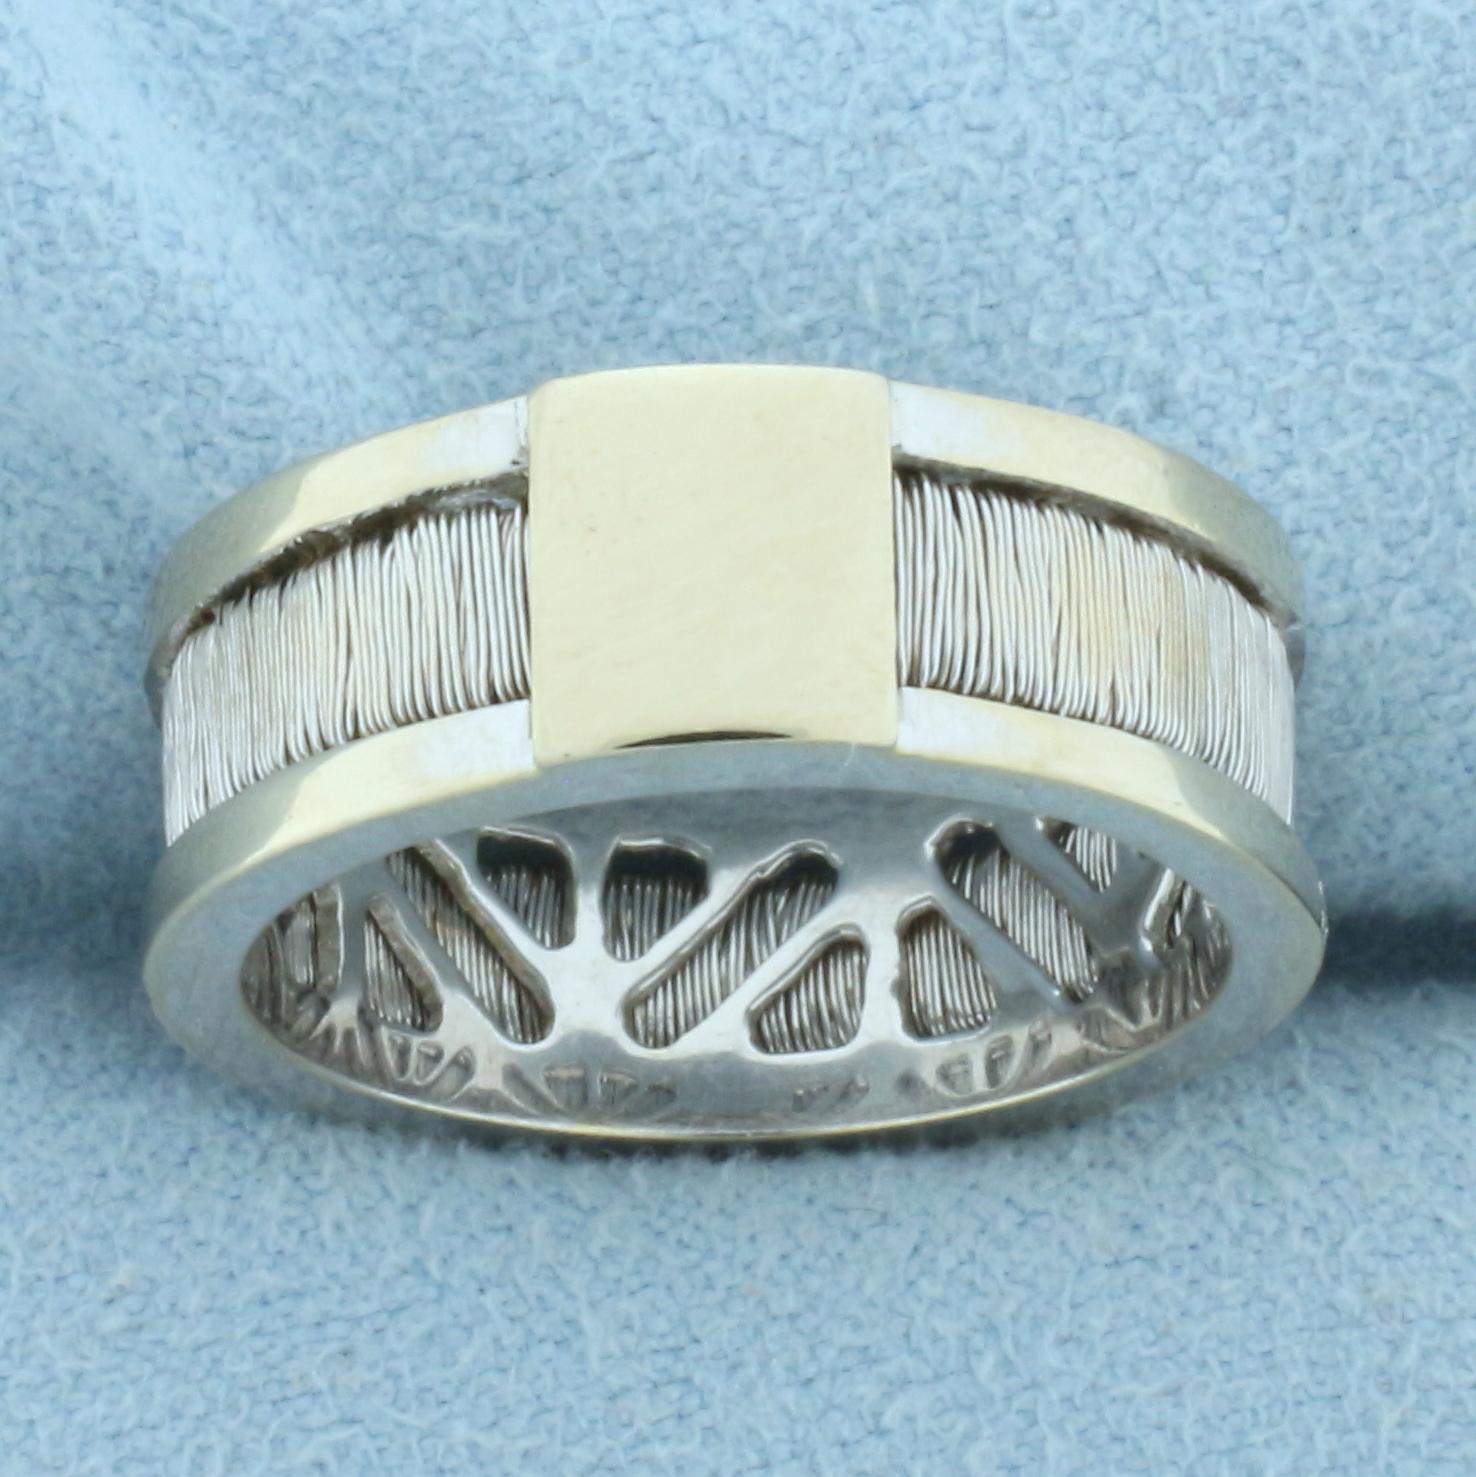 Yvel Designer Diamond Ring In 18k White Gold